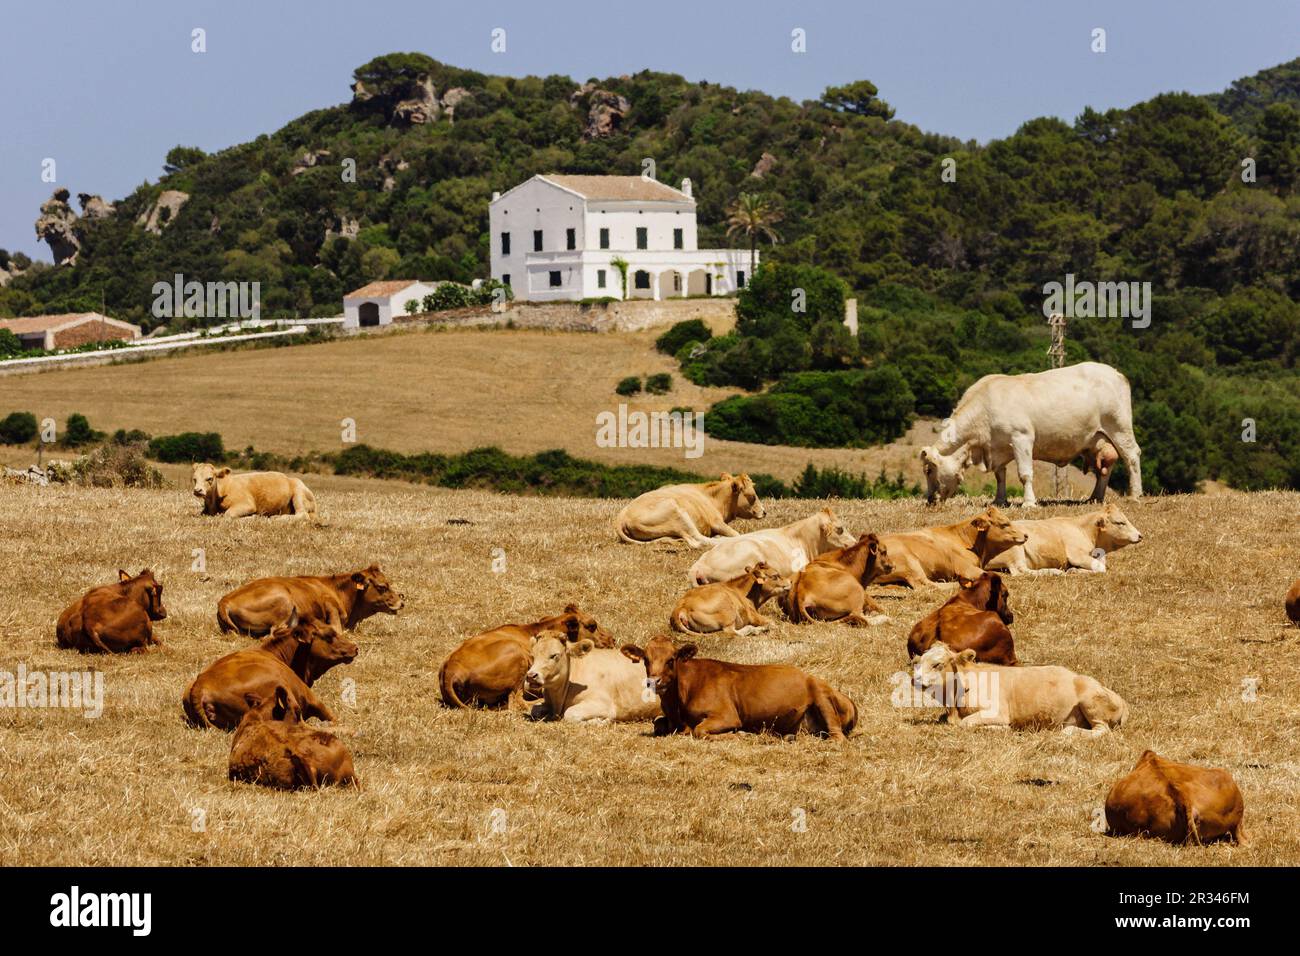 ganado para carne, Alaior, Menorca, Islas Baleares, españa, europa. Stock Photo